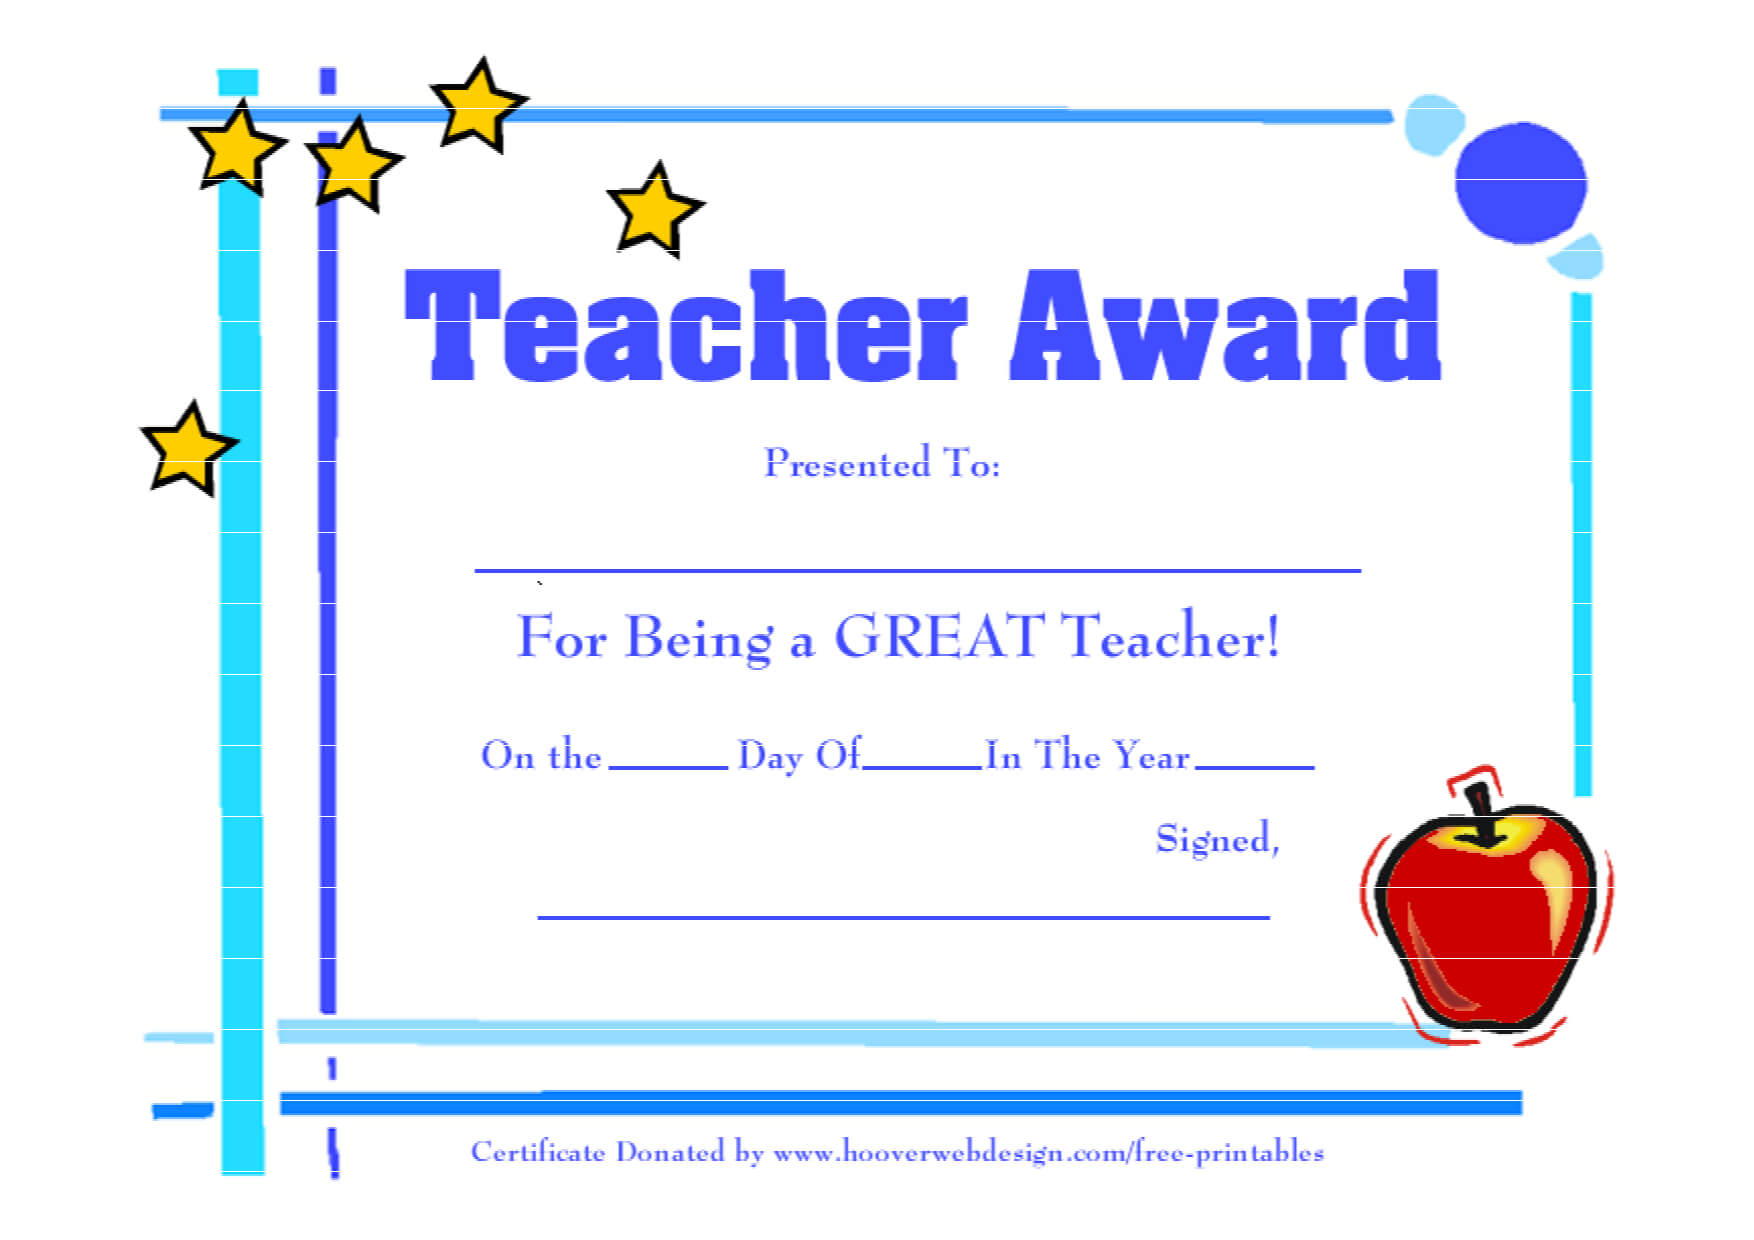 Teacher Award Template - Calep.midnightpig.co Intended For Best Teacher Certificate Templates Free